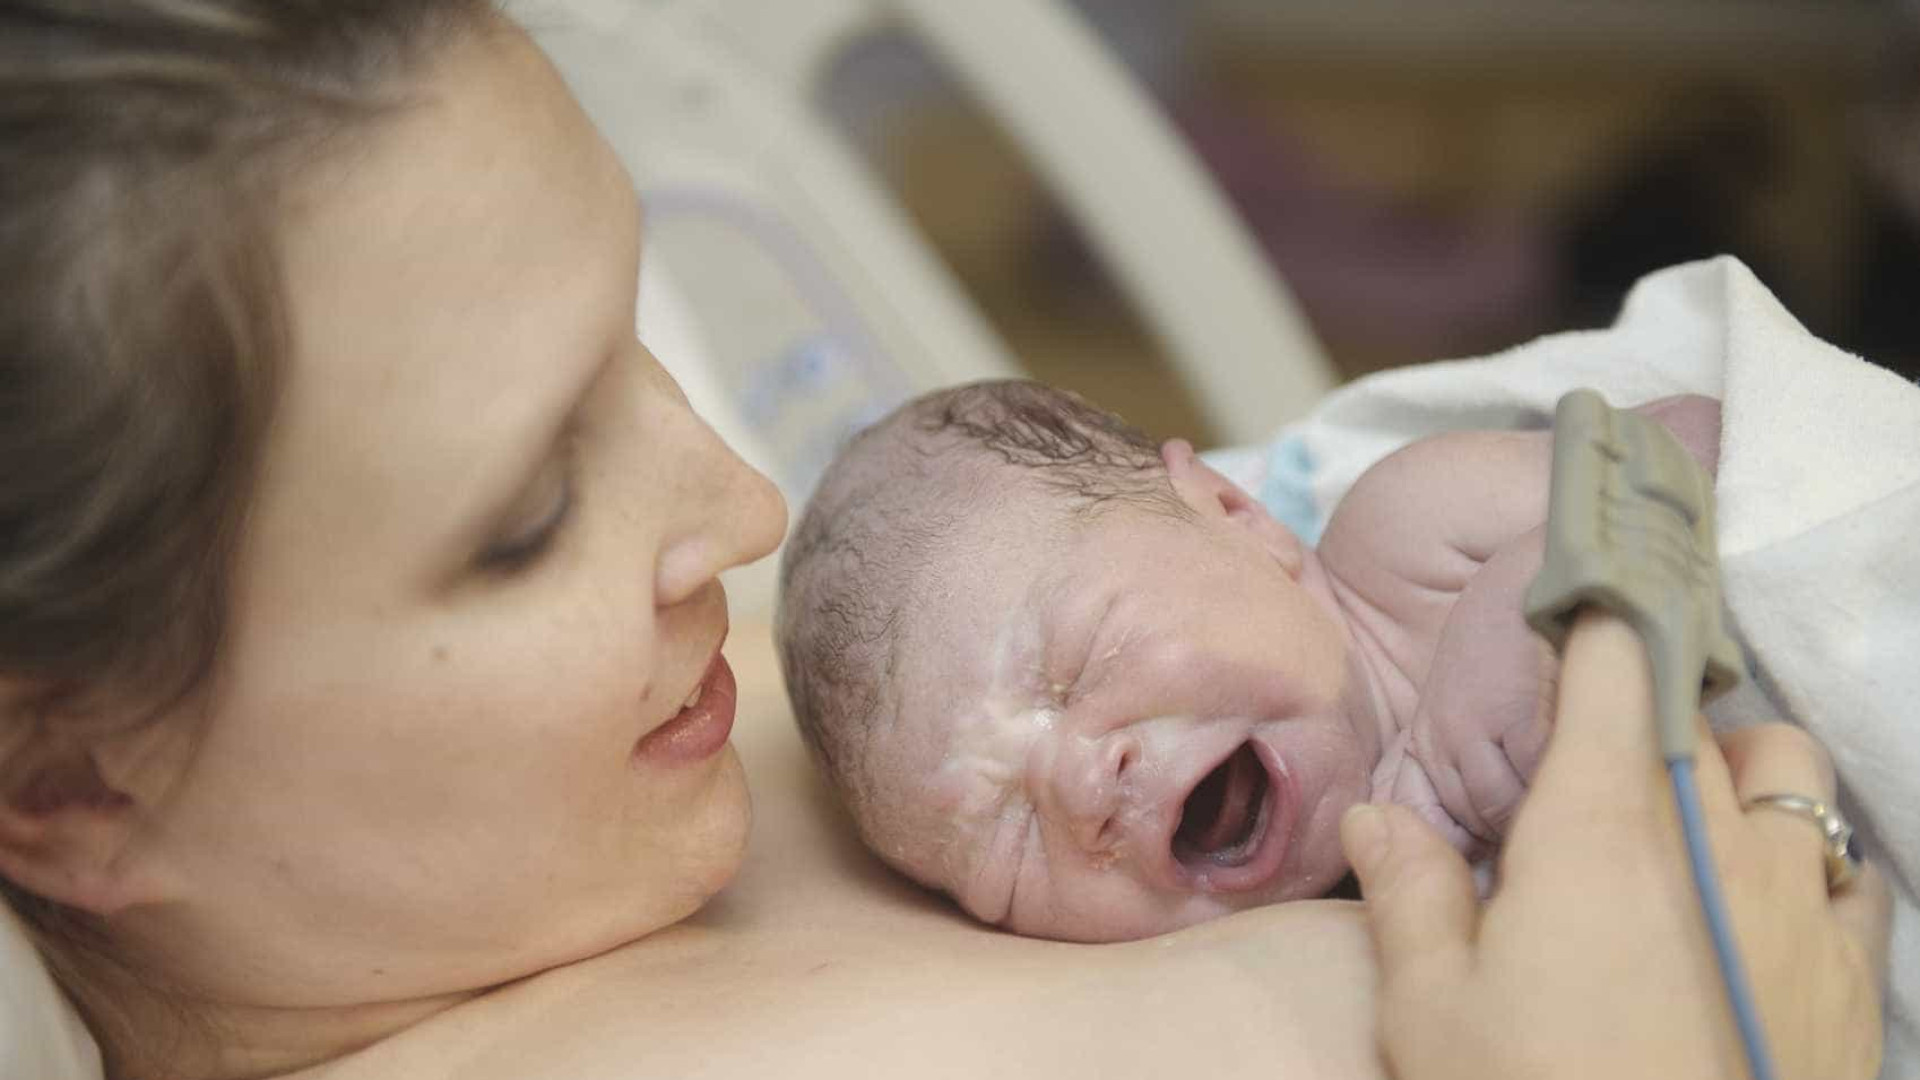 5 procedimentos desnecessários
realizados após o parto; conheça